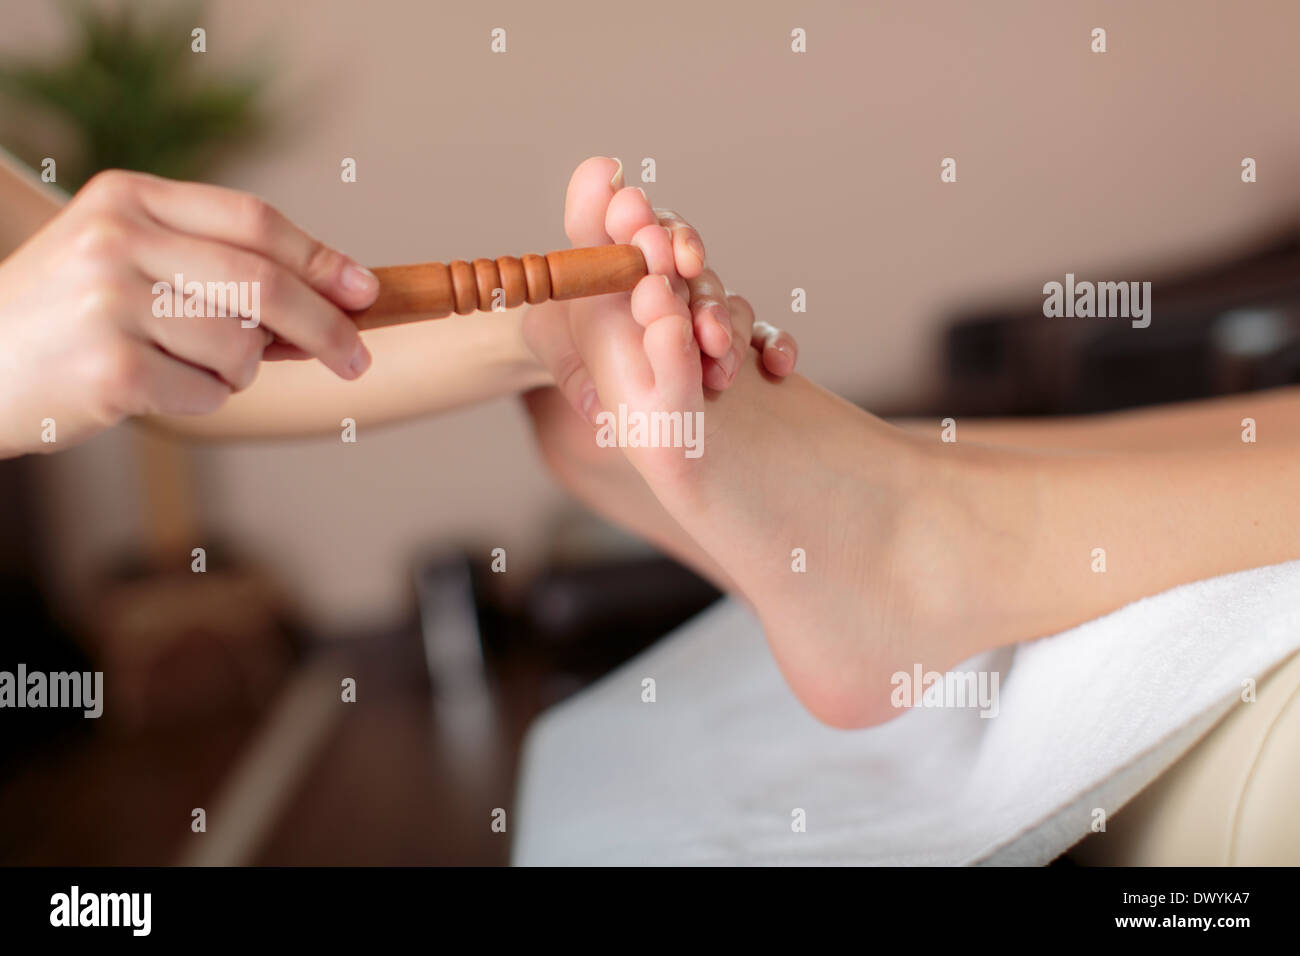 Reflexology foot massage Stock Photo